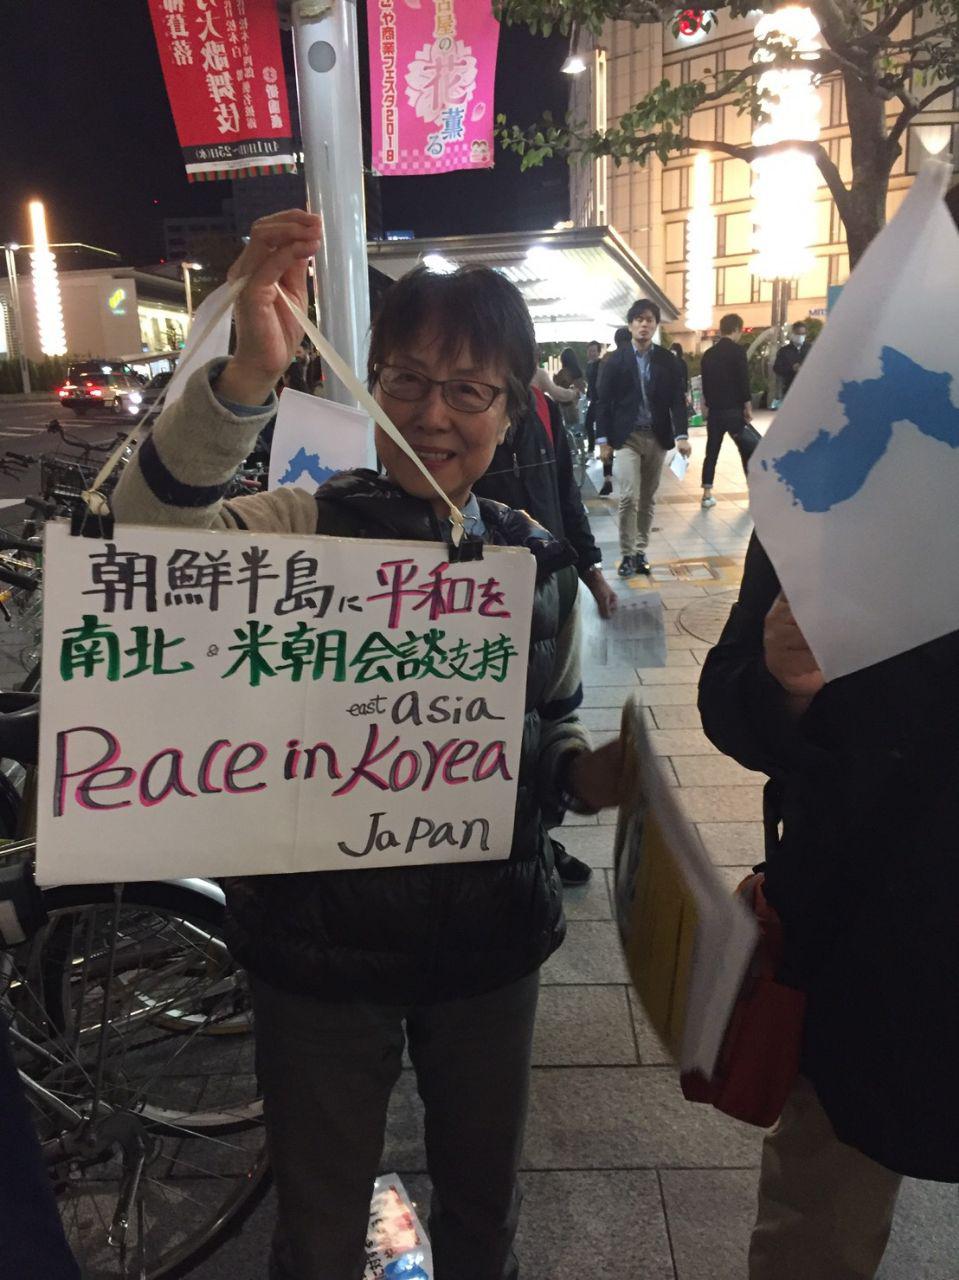 '한반도에 평화를, 남북, 북미회담 지지, 동아시아, 한국, 일본에 평화를'를 들고 있는 참가자